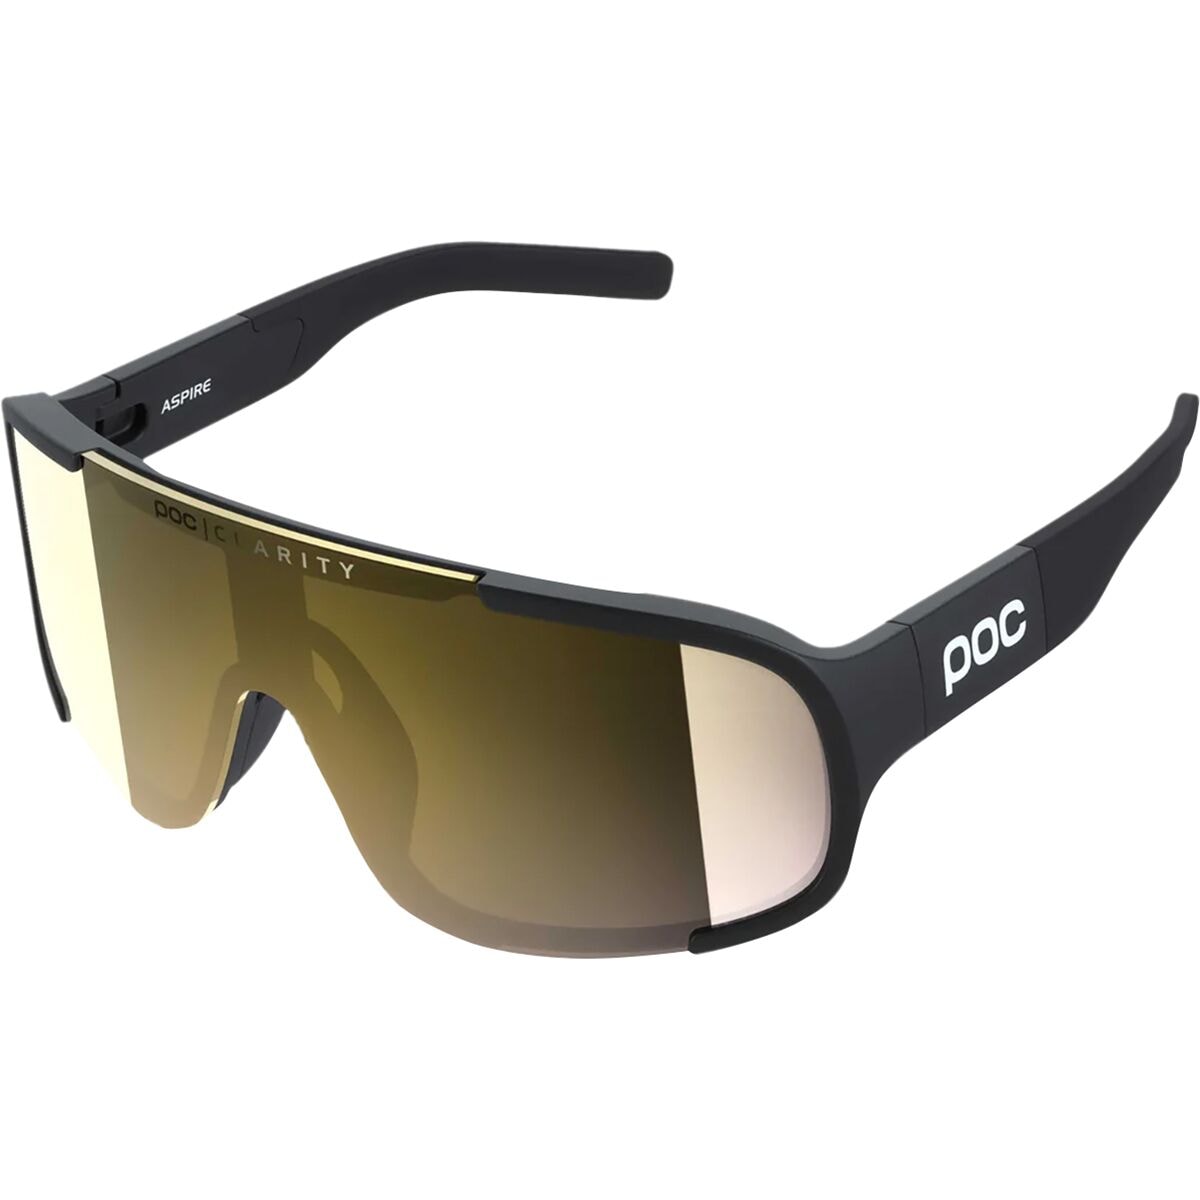 Солнцезащитные очки aspire Poc, цвет uranium black/clarity road/partly sunny gold